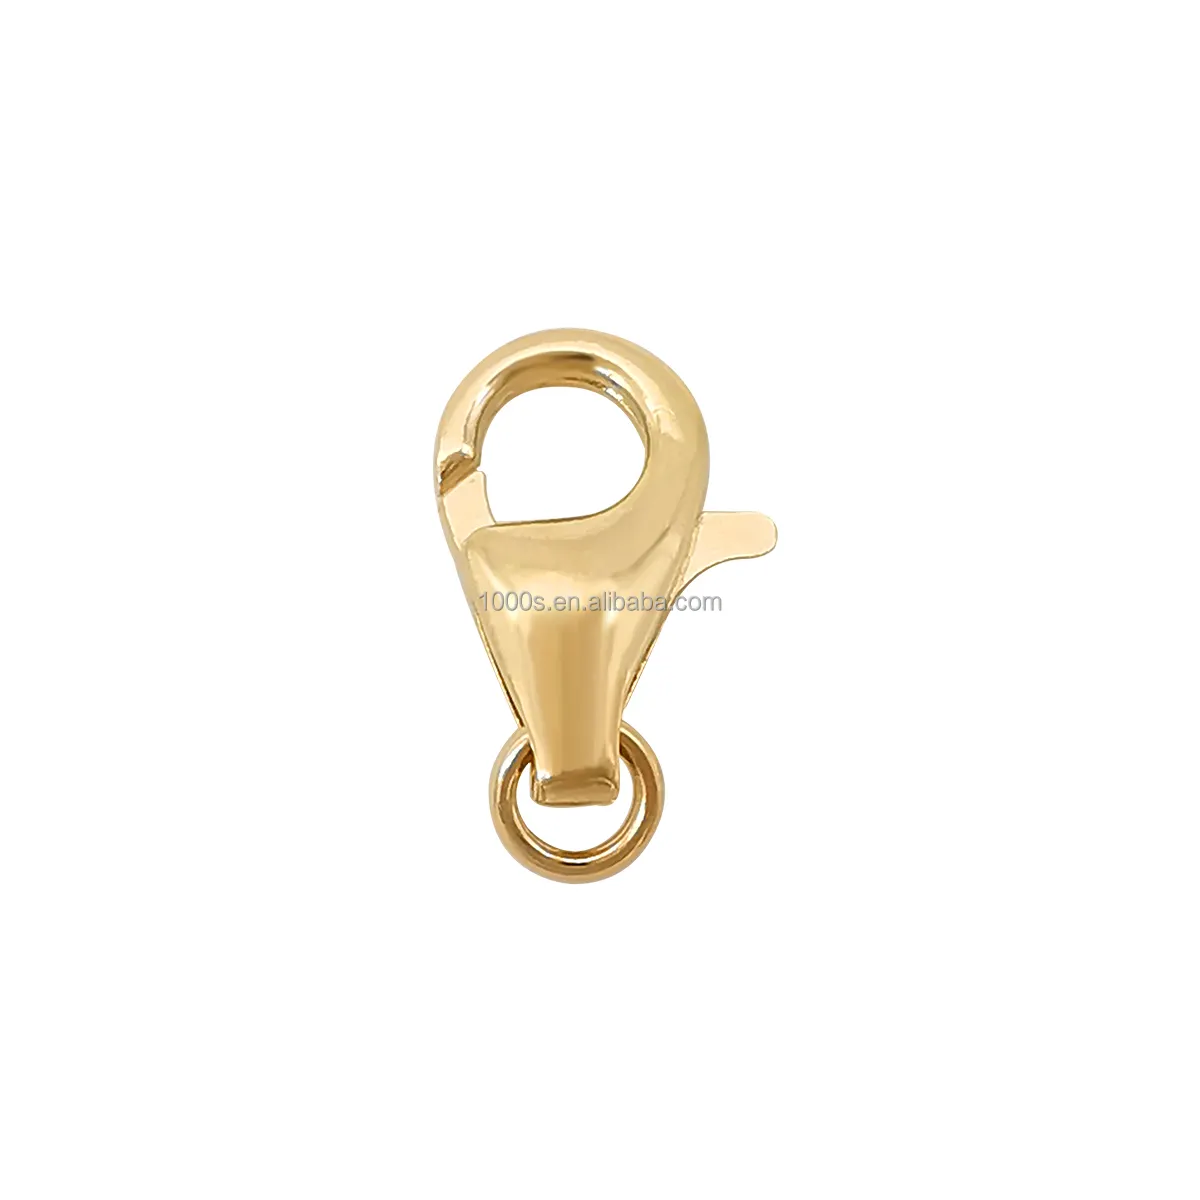 Gioielli in oro 14 carati accessori per gioielli fai da te chiusura a moschettone chiusura con ganci di diverse dimensioni disponibili